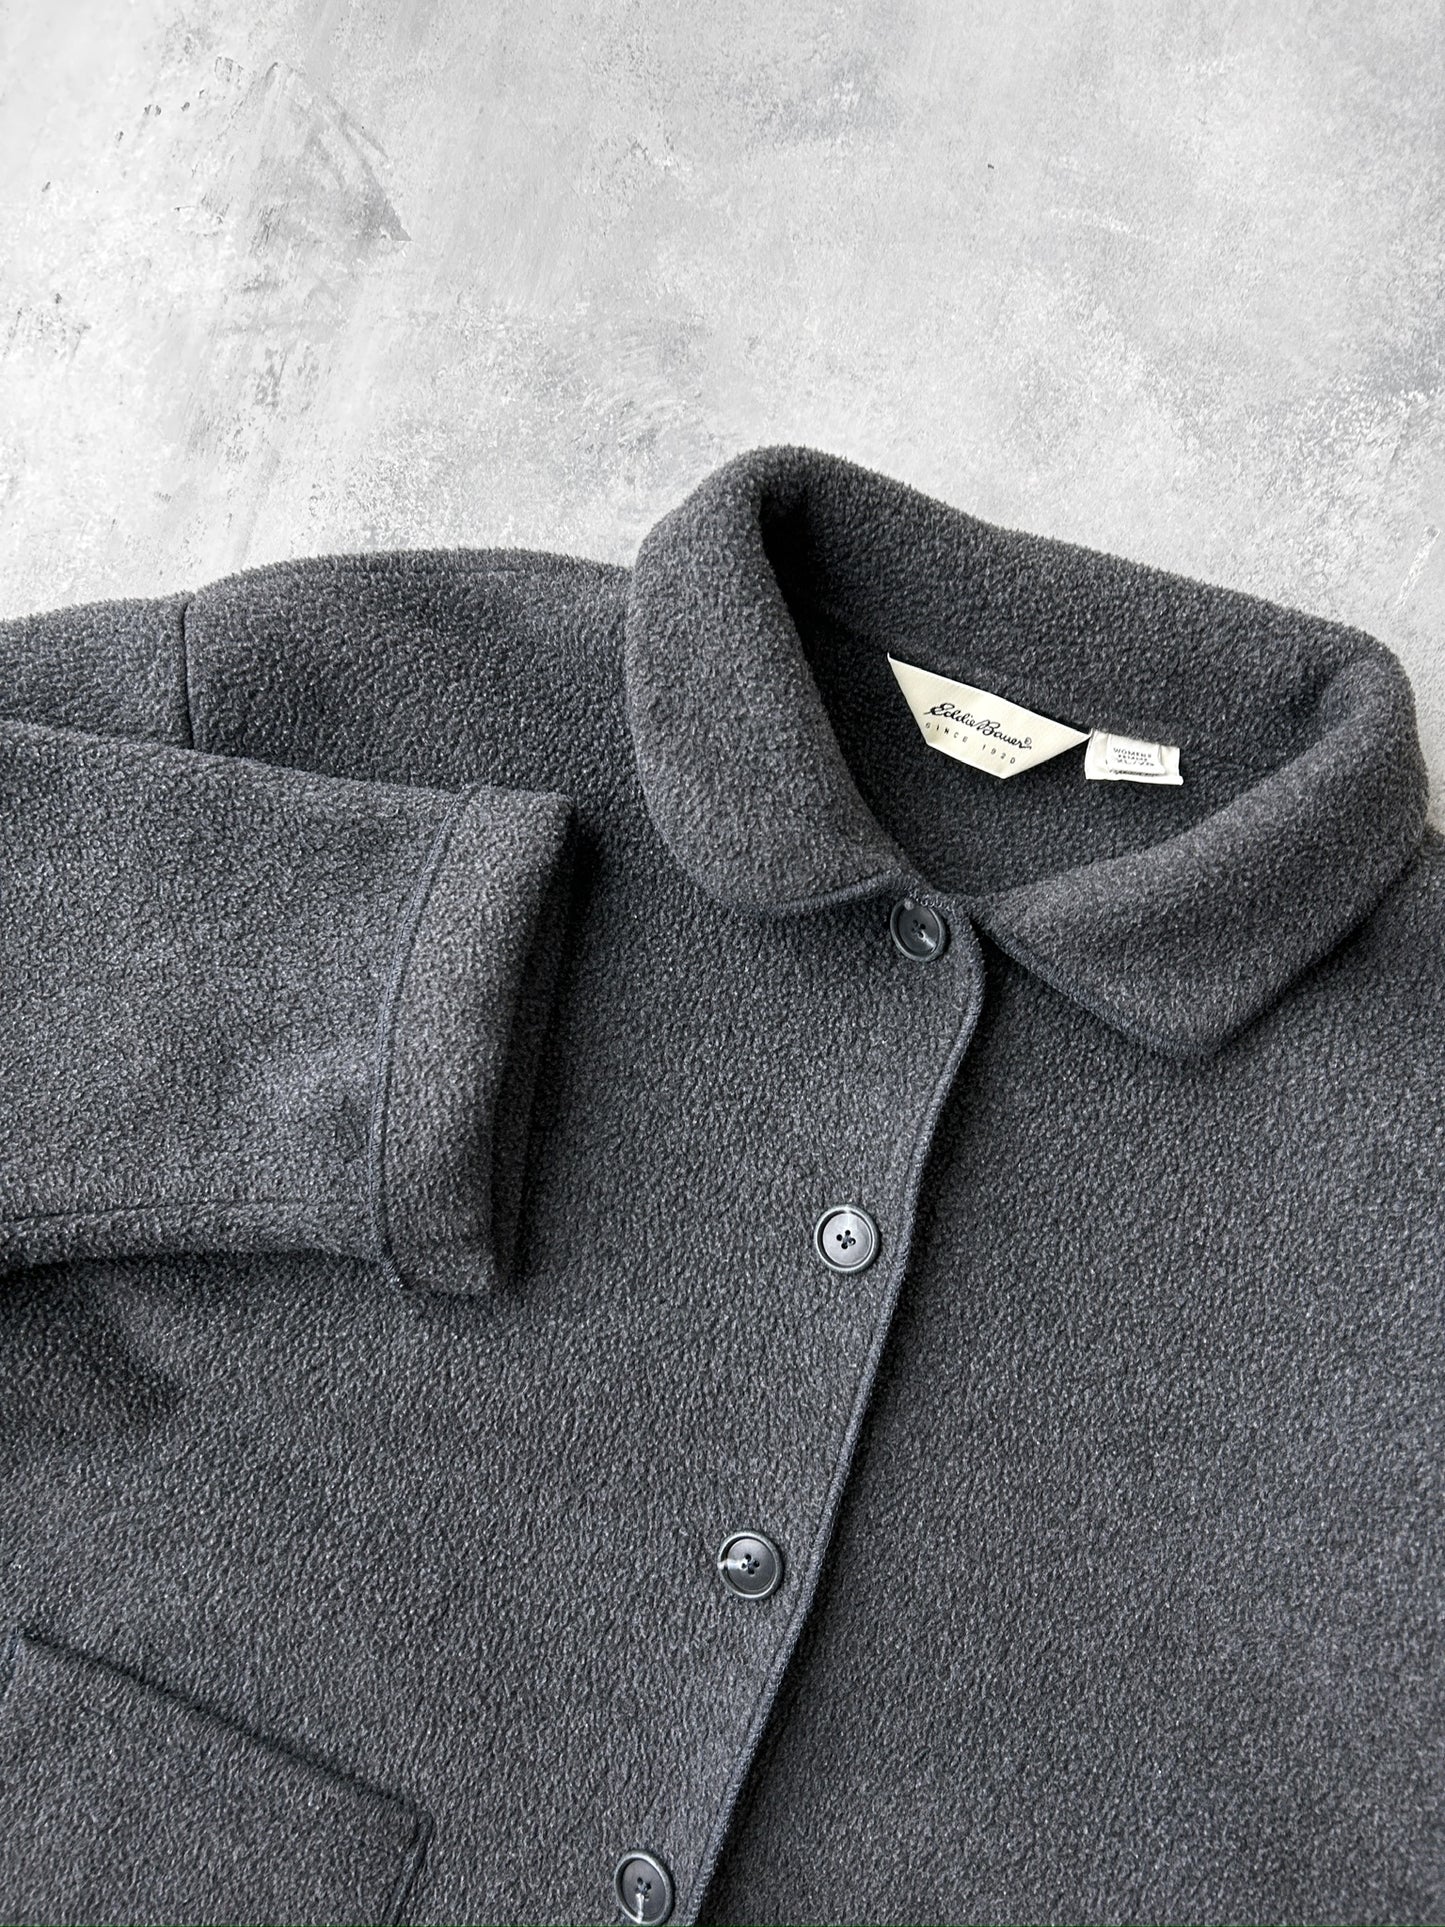 Gray Fleece Jacket 90's - XL